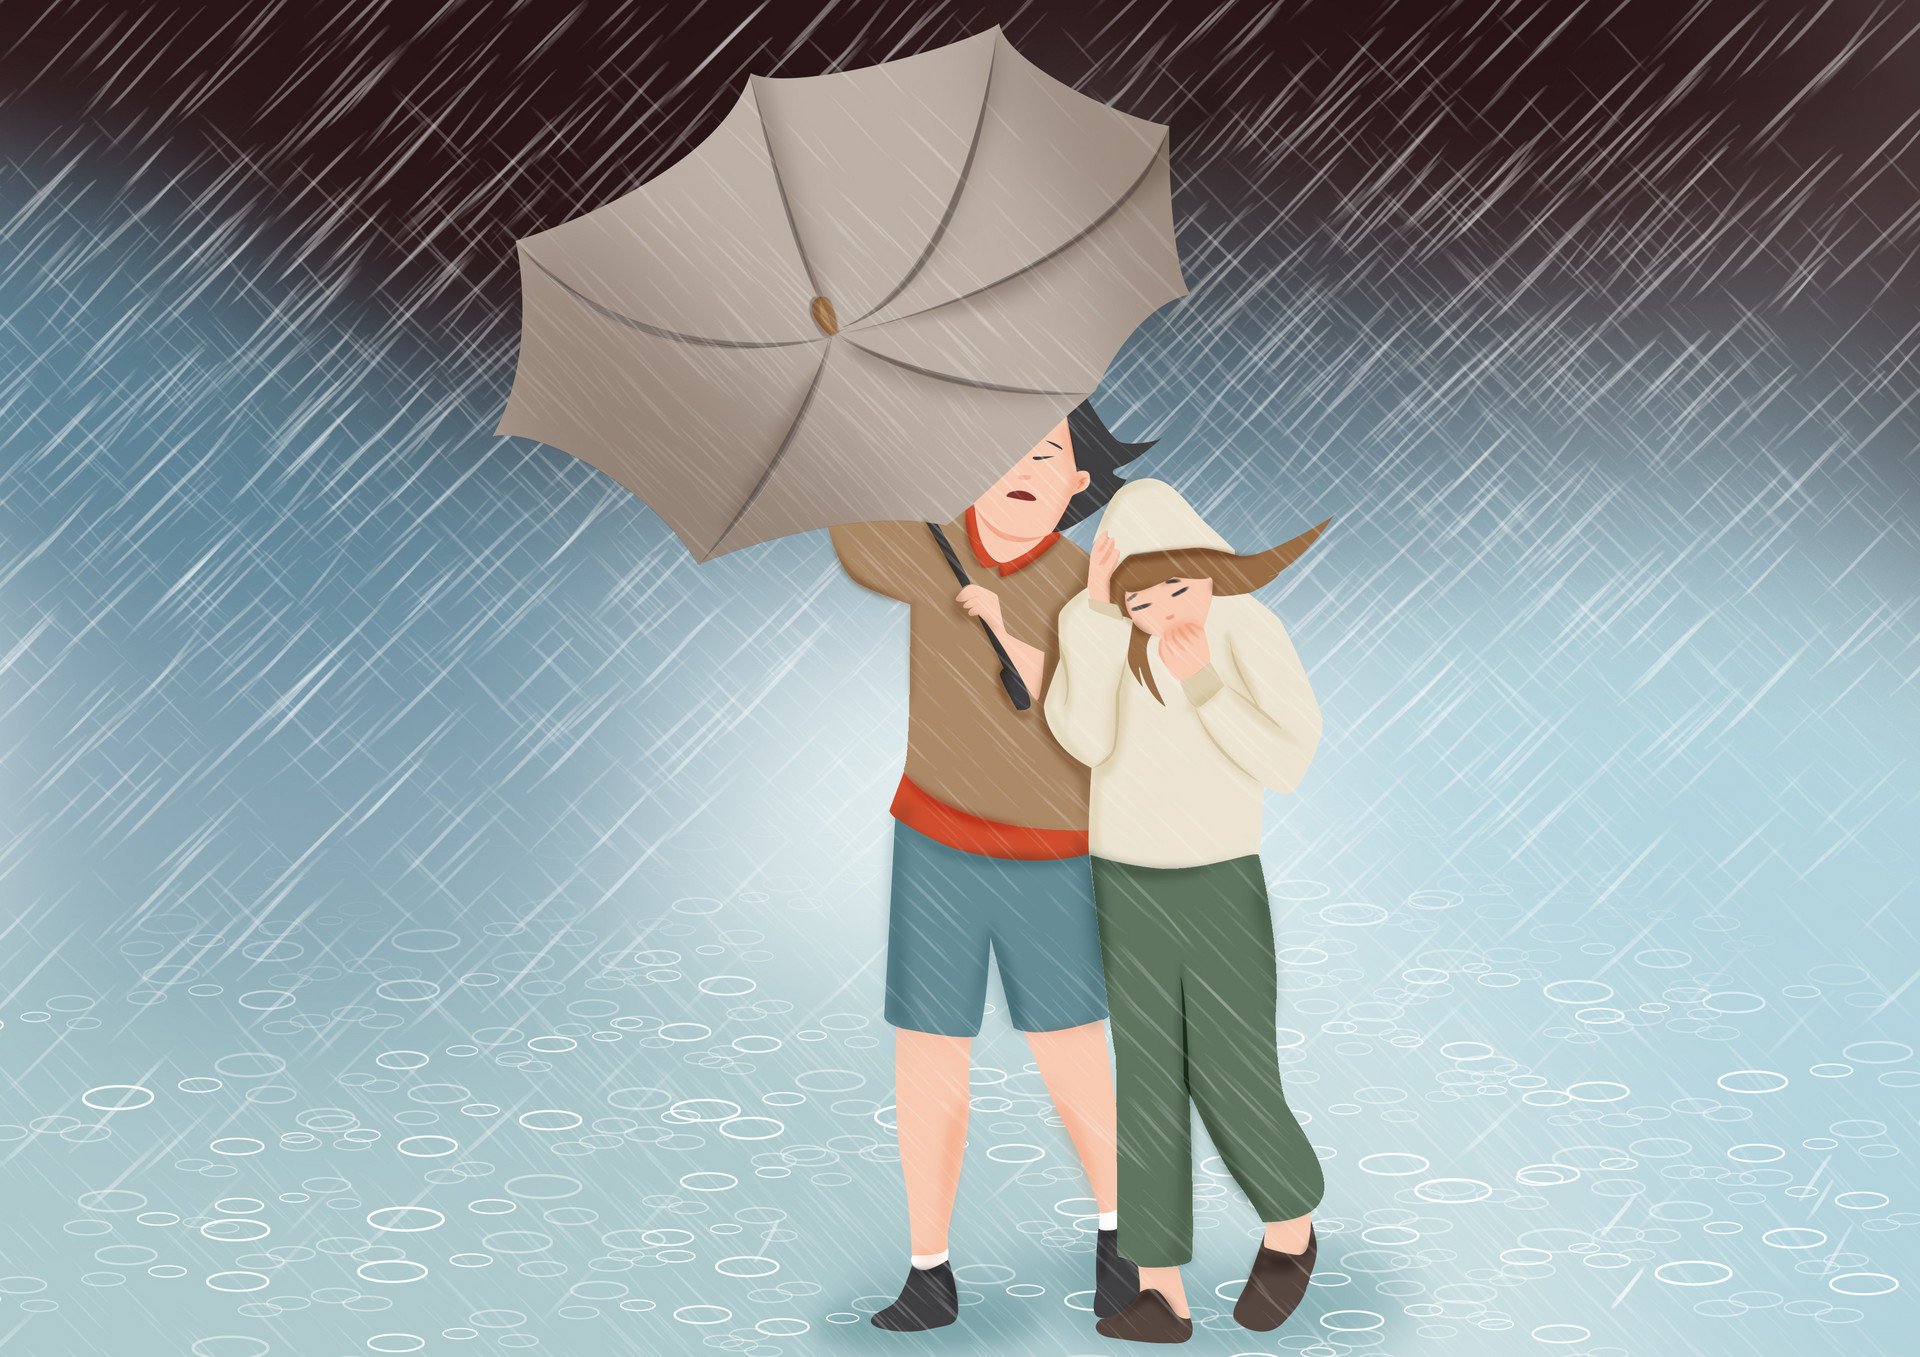 青岛崂山升级暴雨红色预警 崂顶等降雨量已达100毫米以上